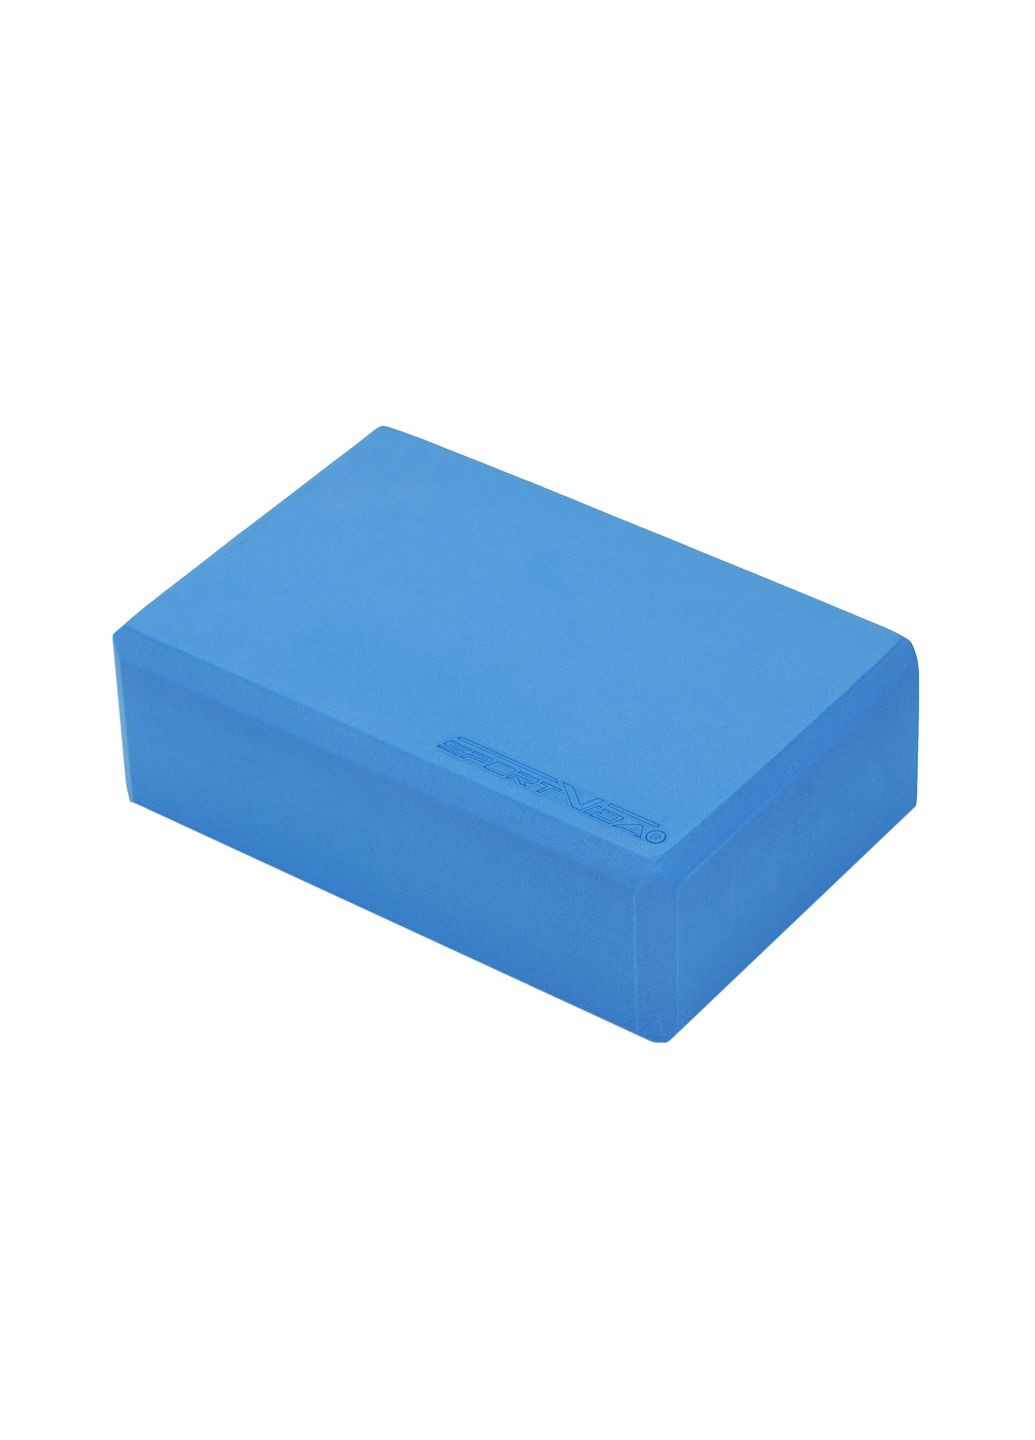 Блок для йоги EVA 23 x 15 x 7.6 см SVEZ0069 Blue SportVida sv-ez0069 (277162522)